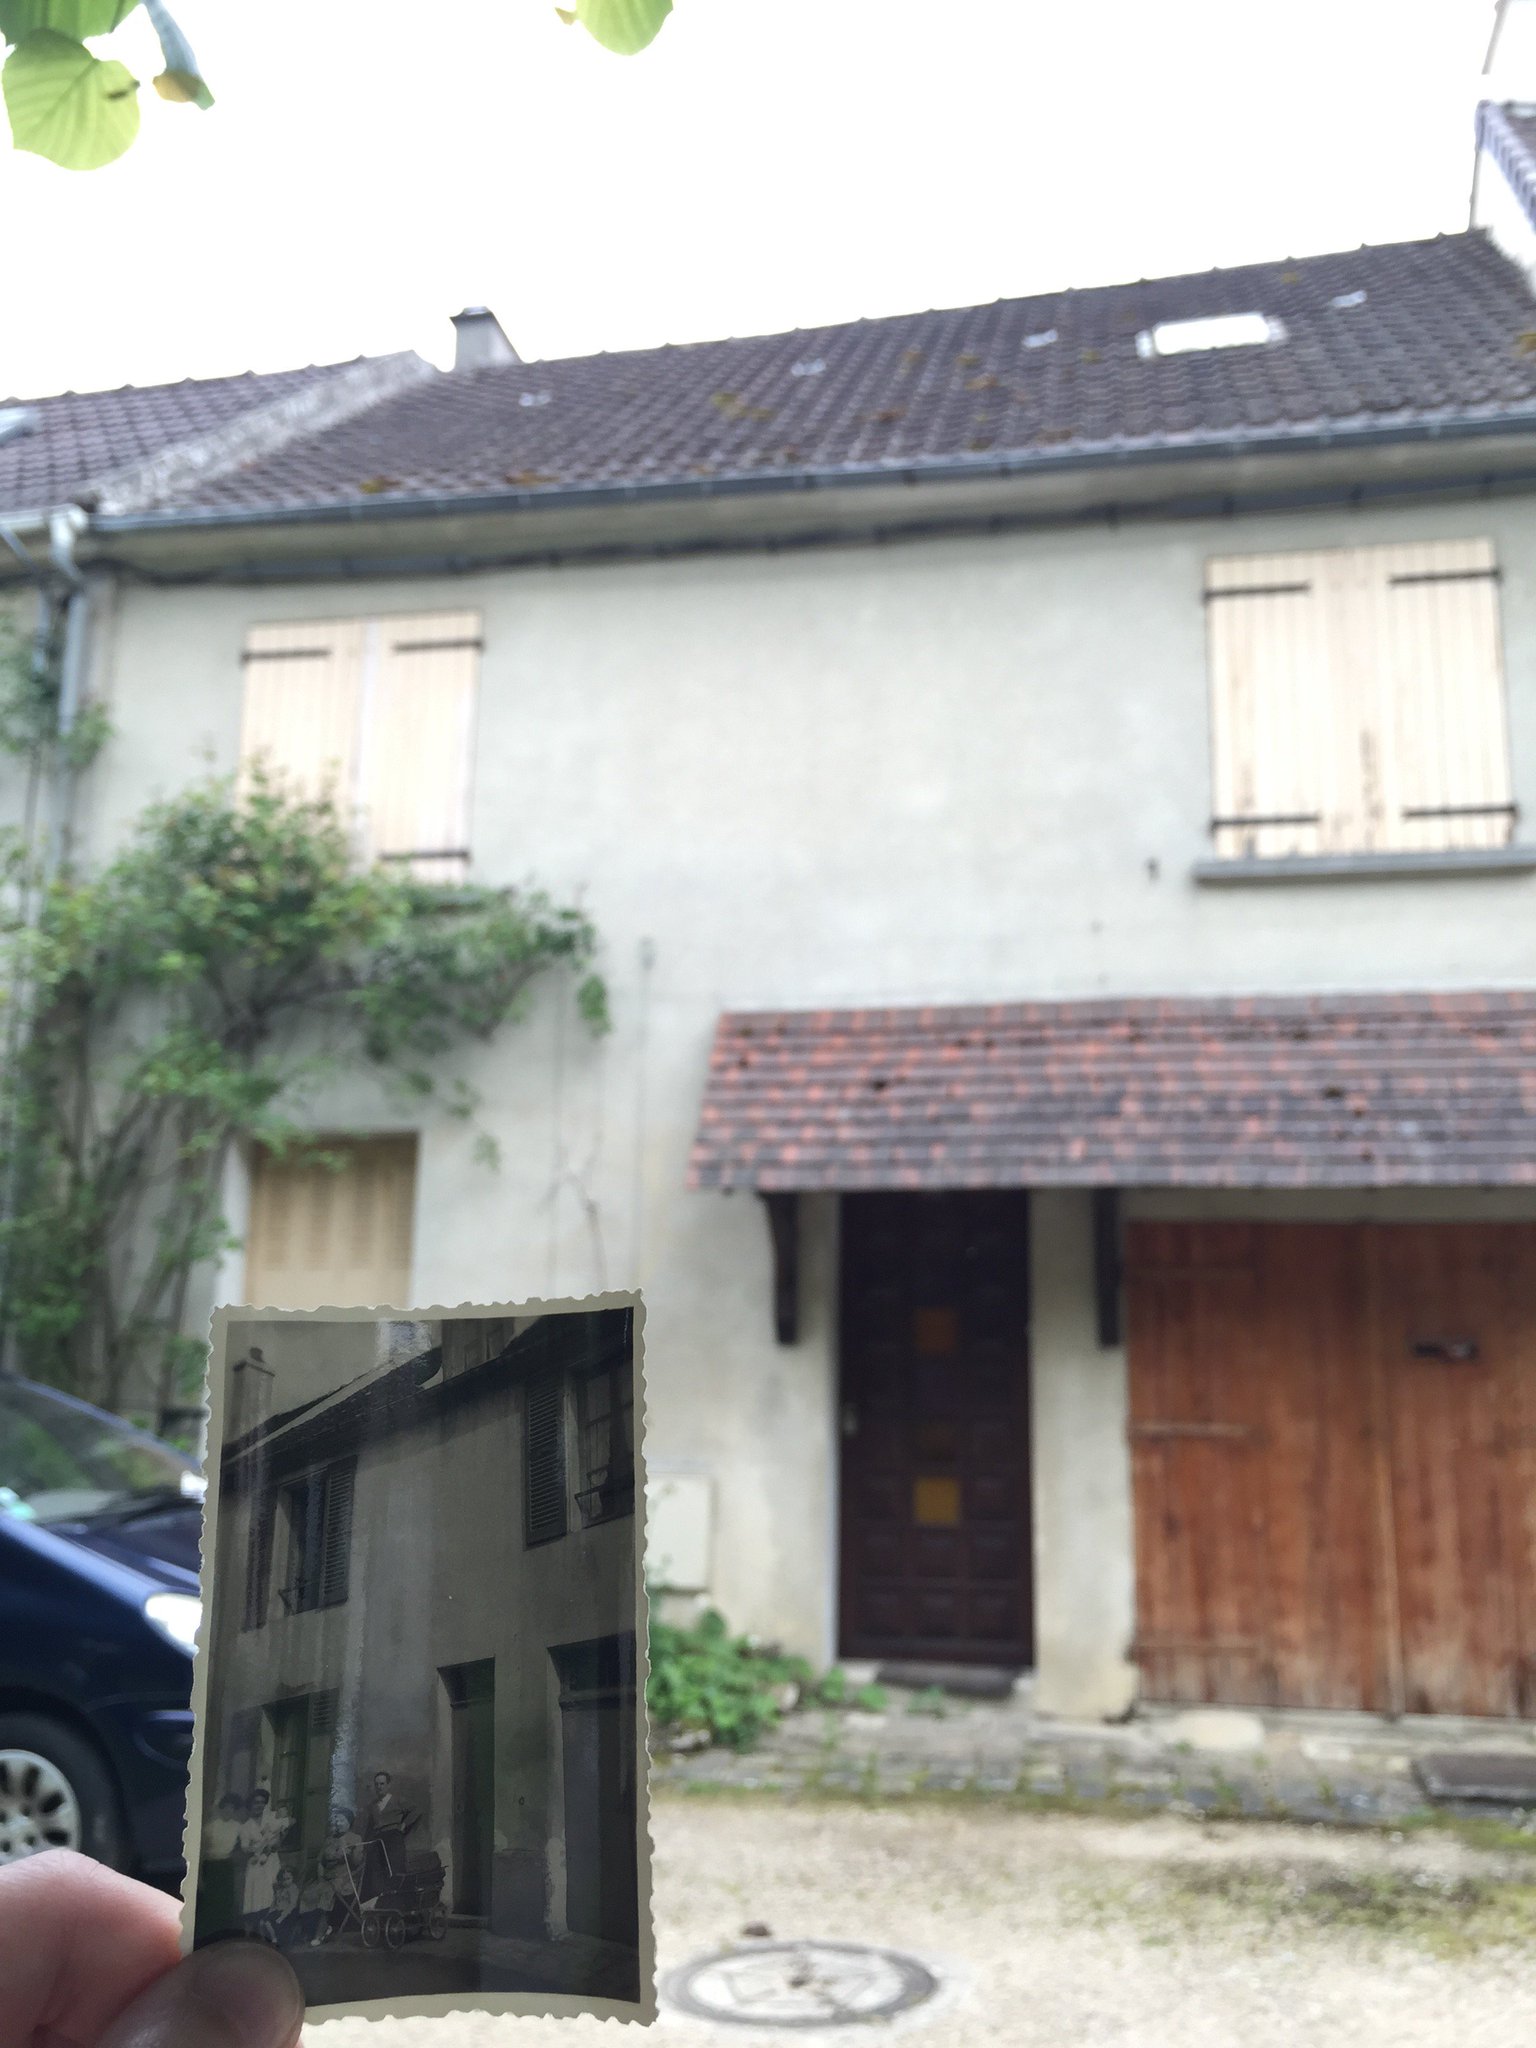 Le toit a été modifié, la lucarne a disparu #Madeleineproject https://t.co/K3XMb2tYc4